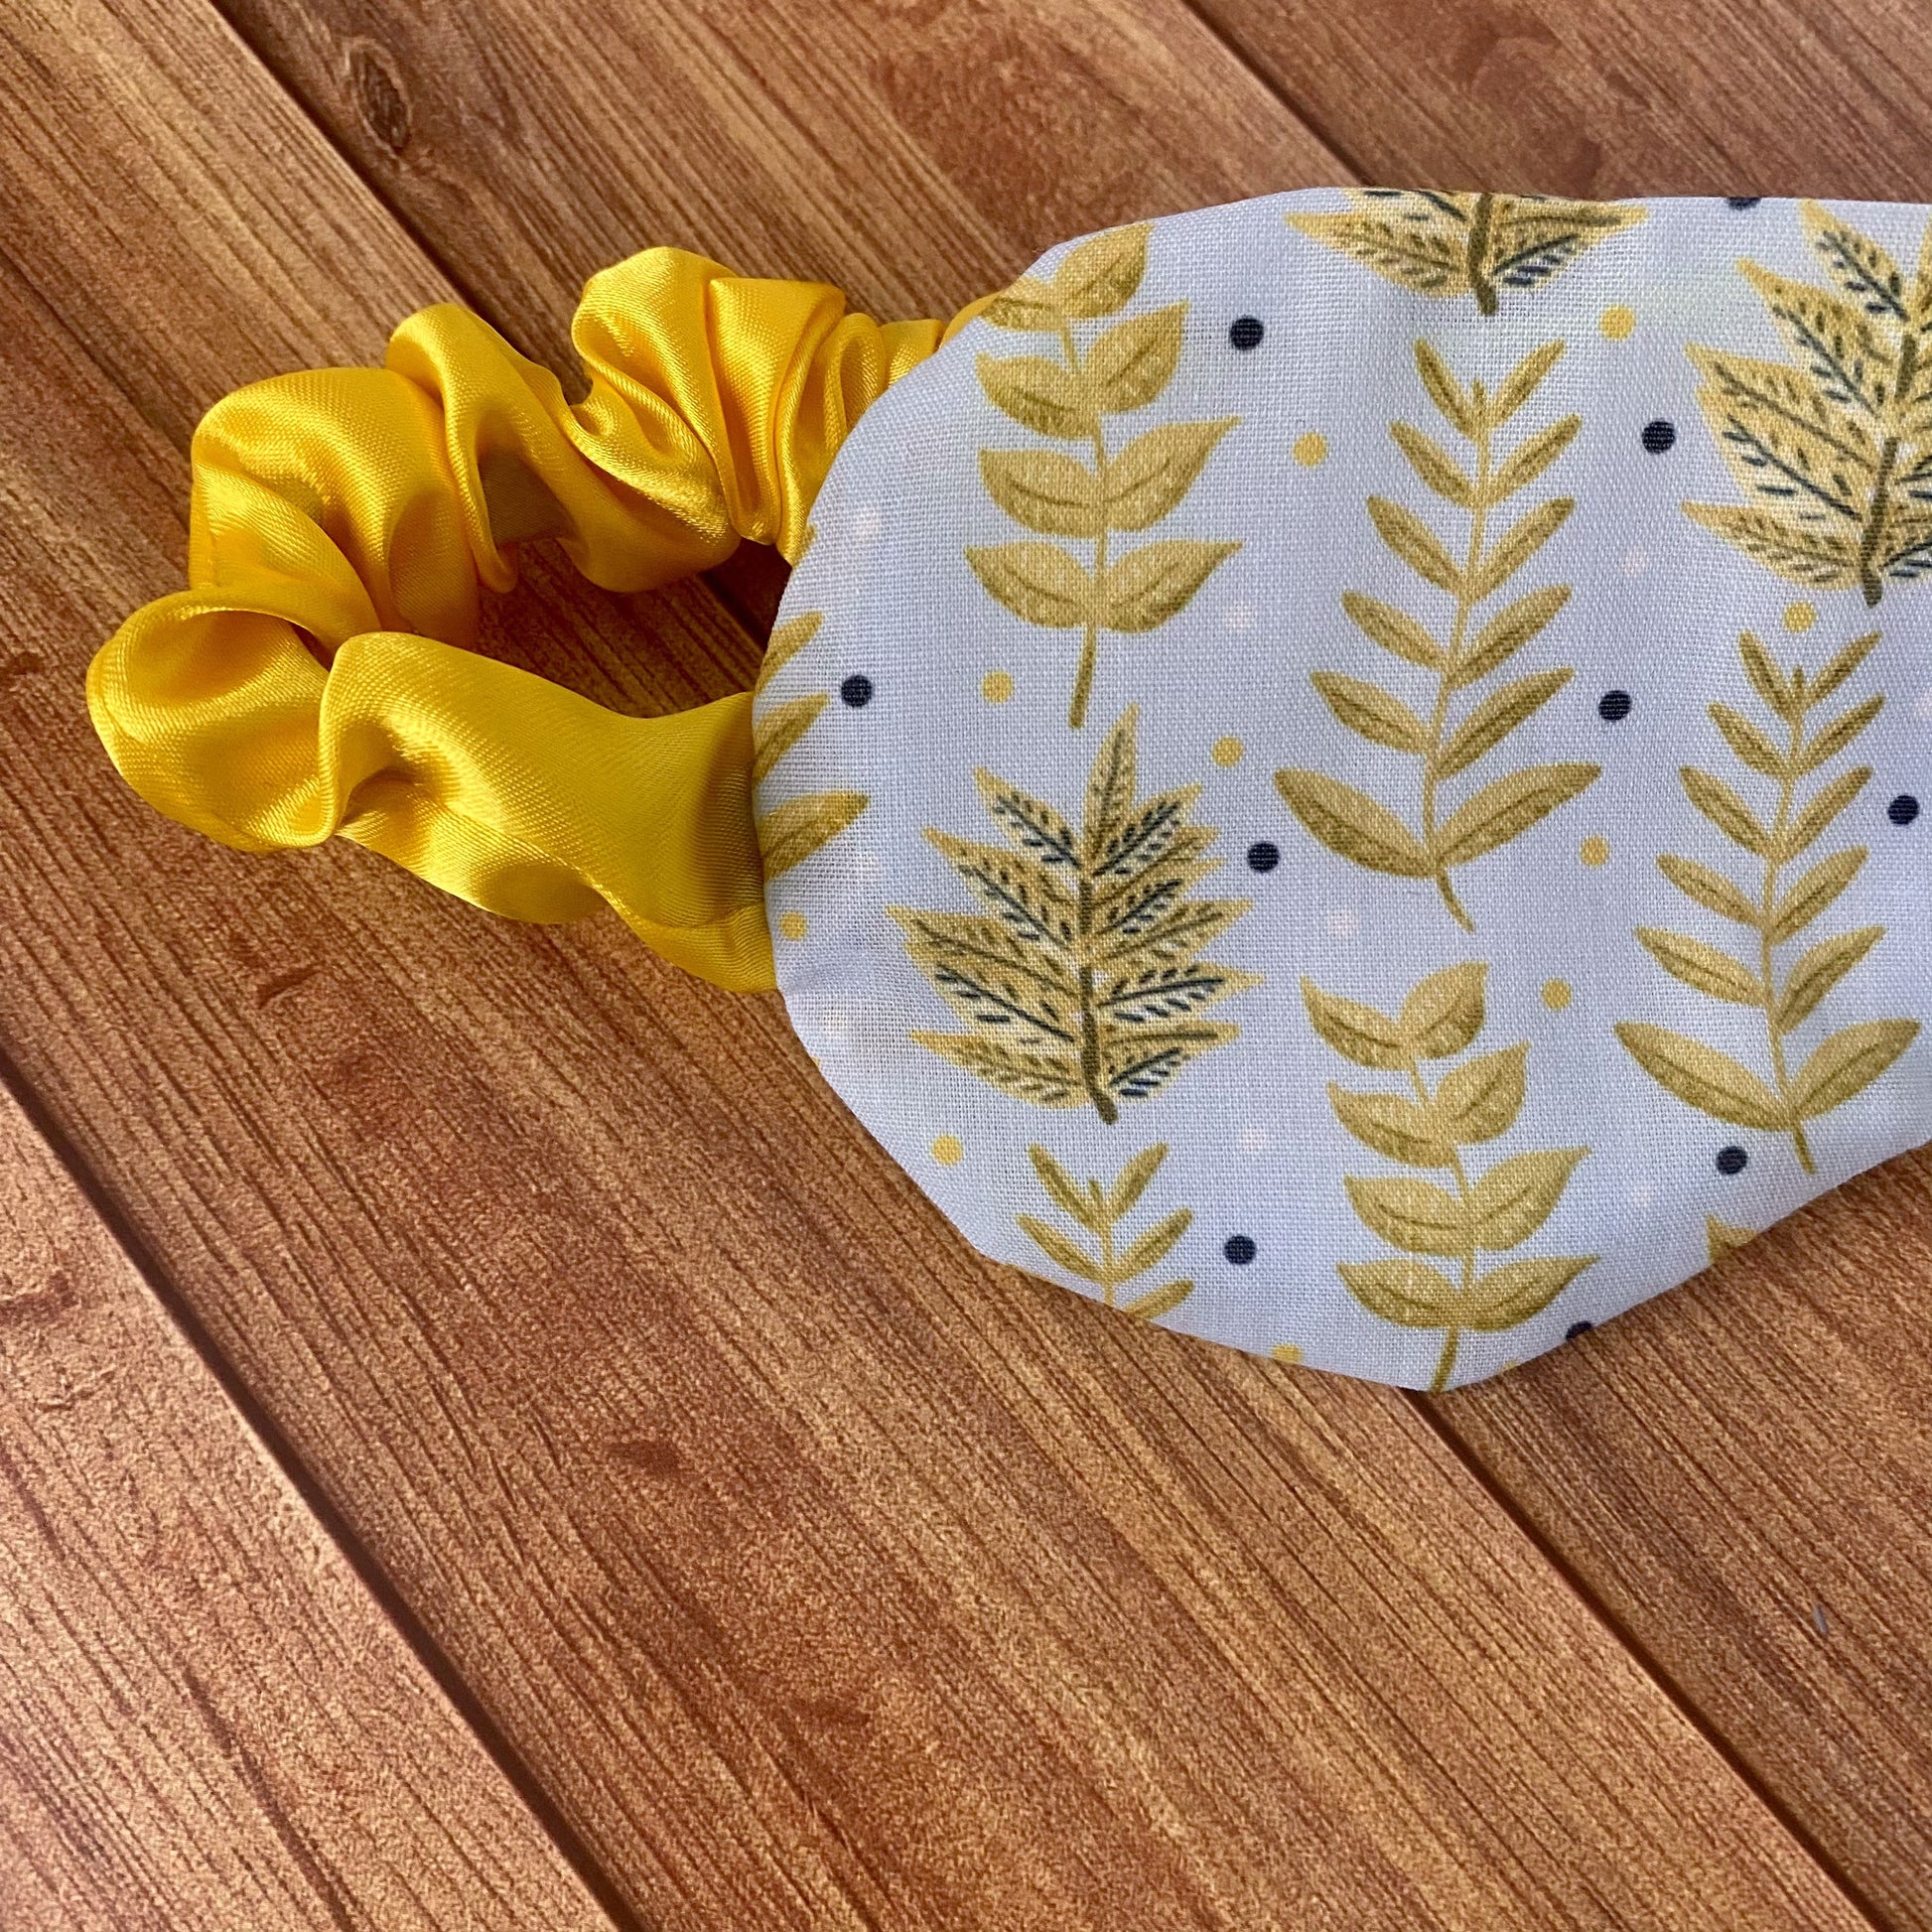 closeup of sleepmask with yellow foliage pattern on it